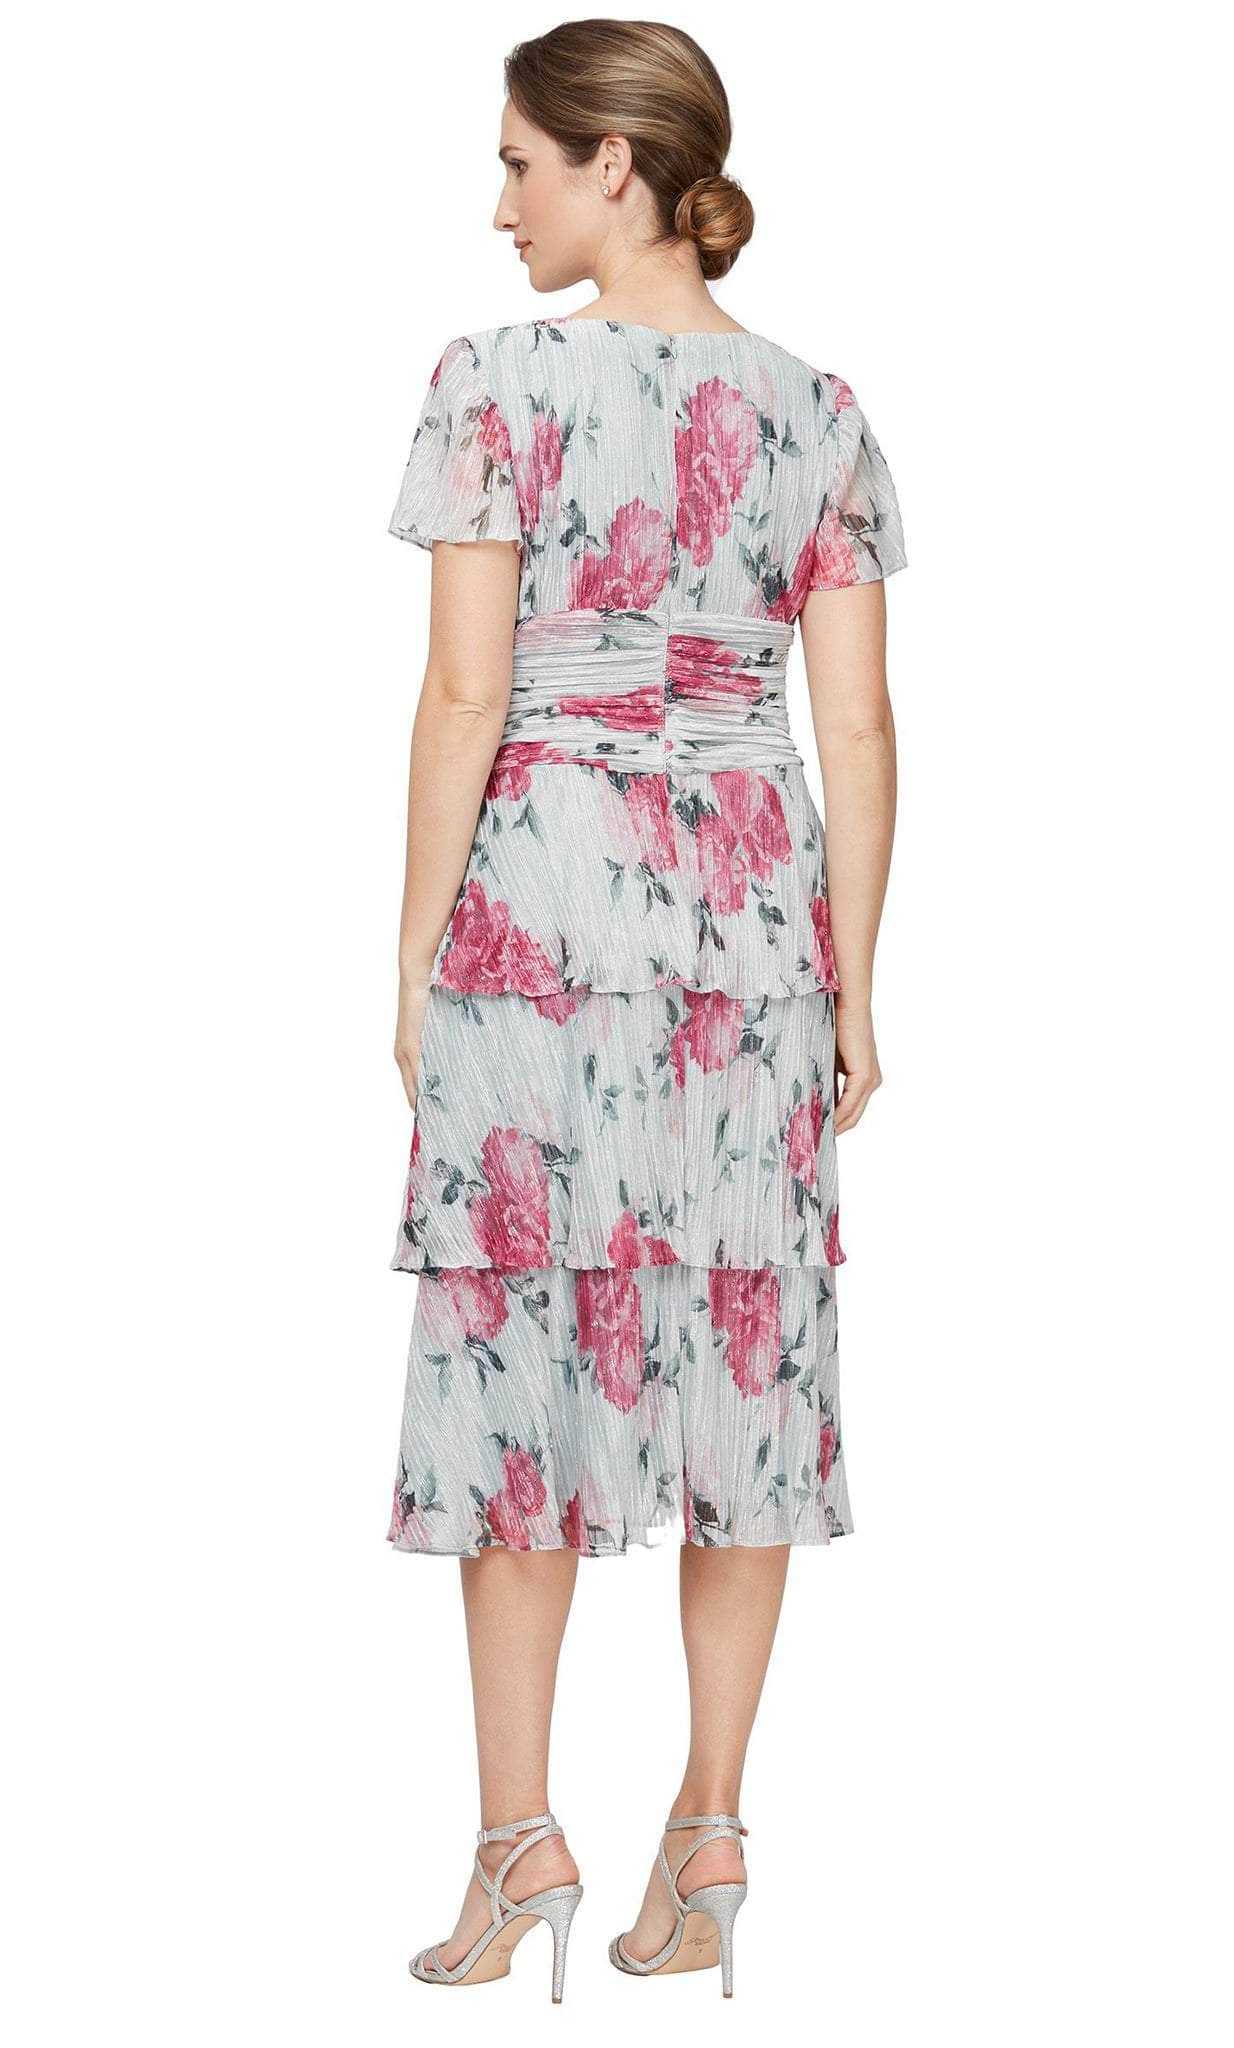 SLNY, SLNY 91551741 - Floral Ruched Sheath Dress